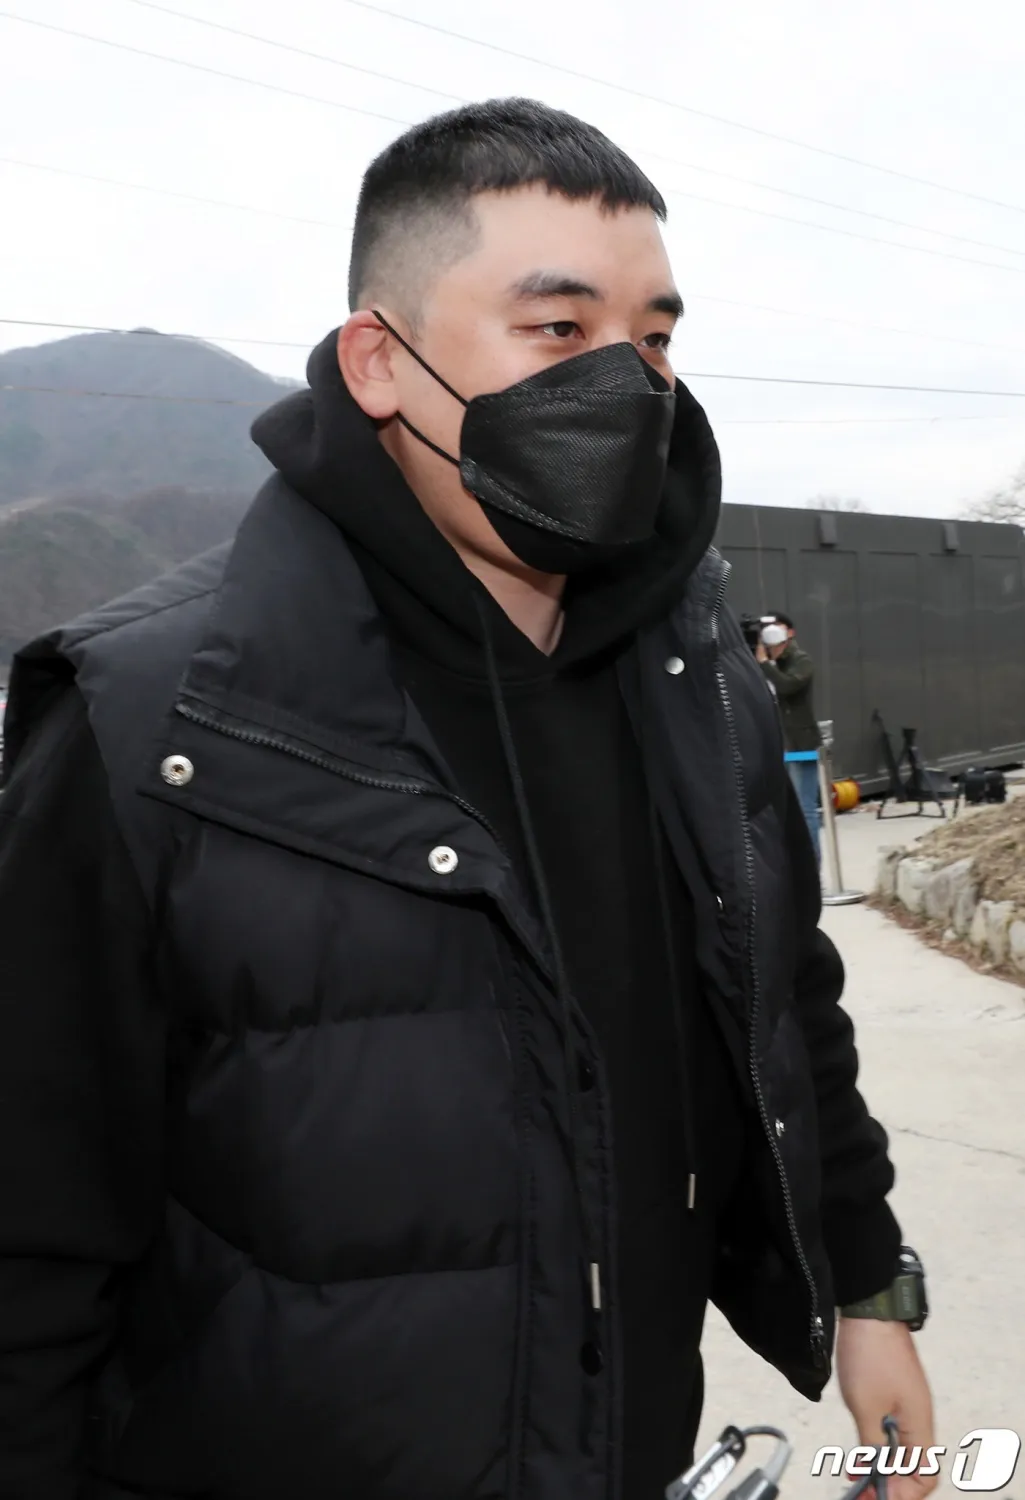 胜利在最新亮相中因“借用” BIGBANG 名字而受到批评